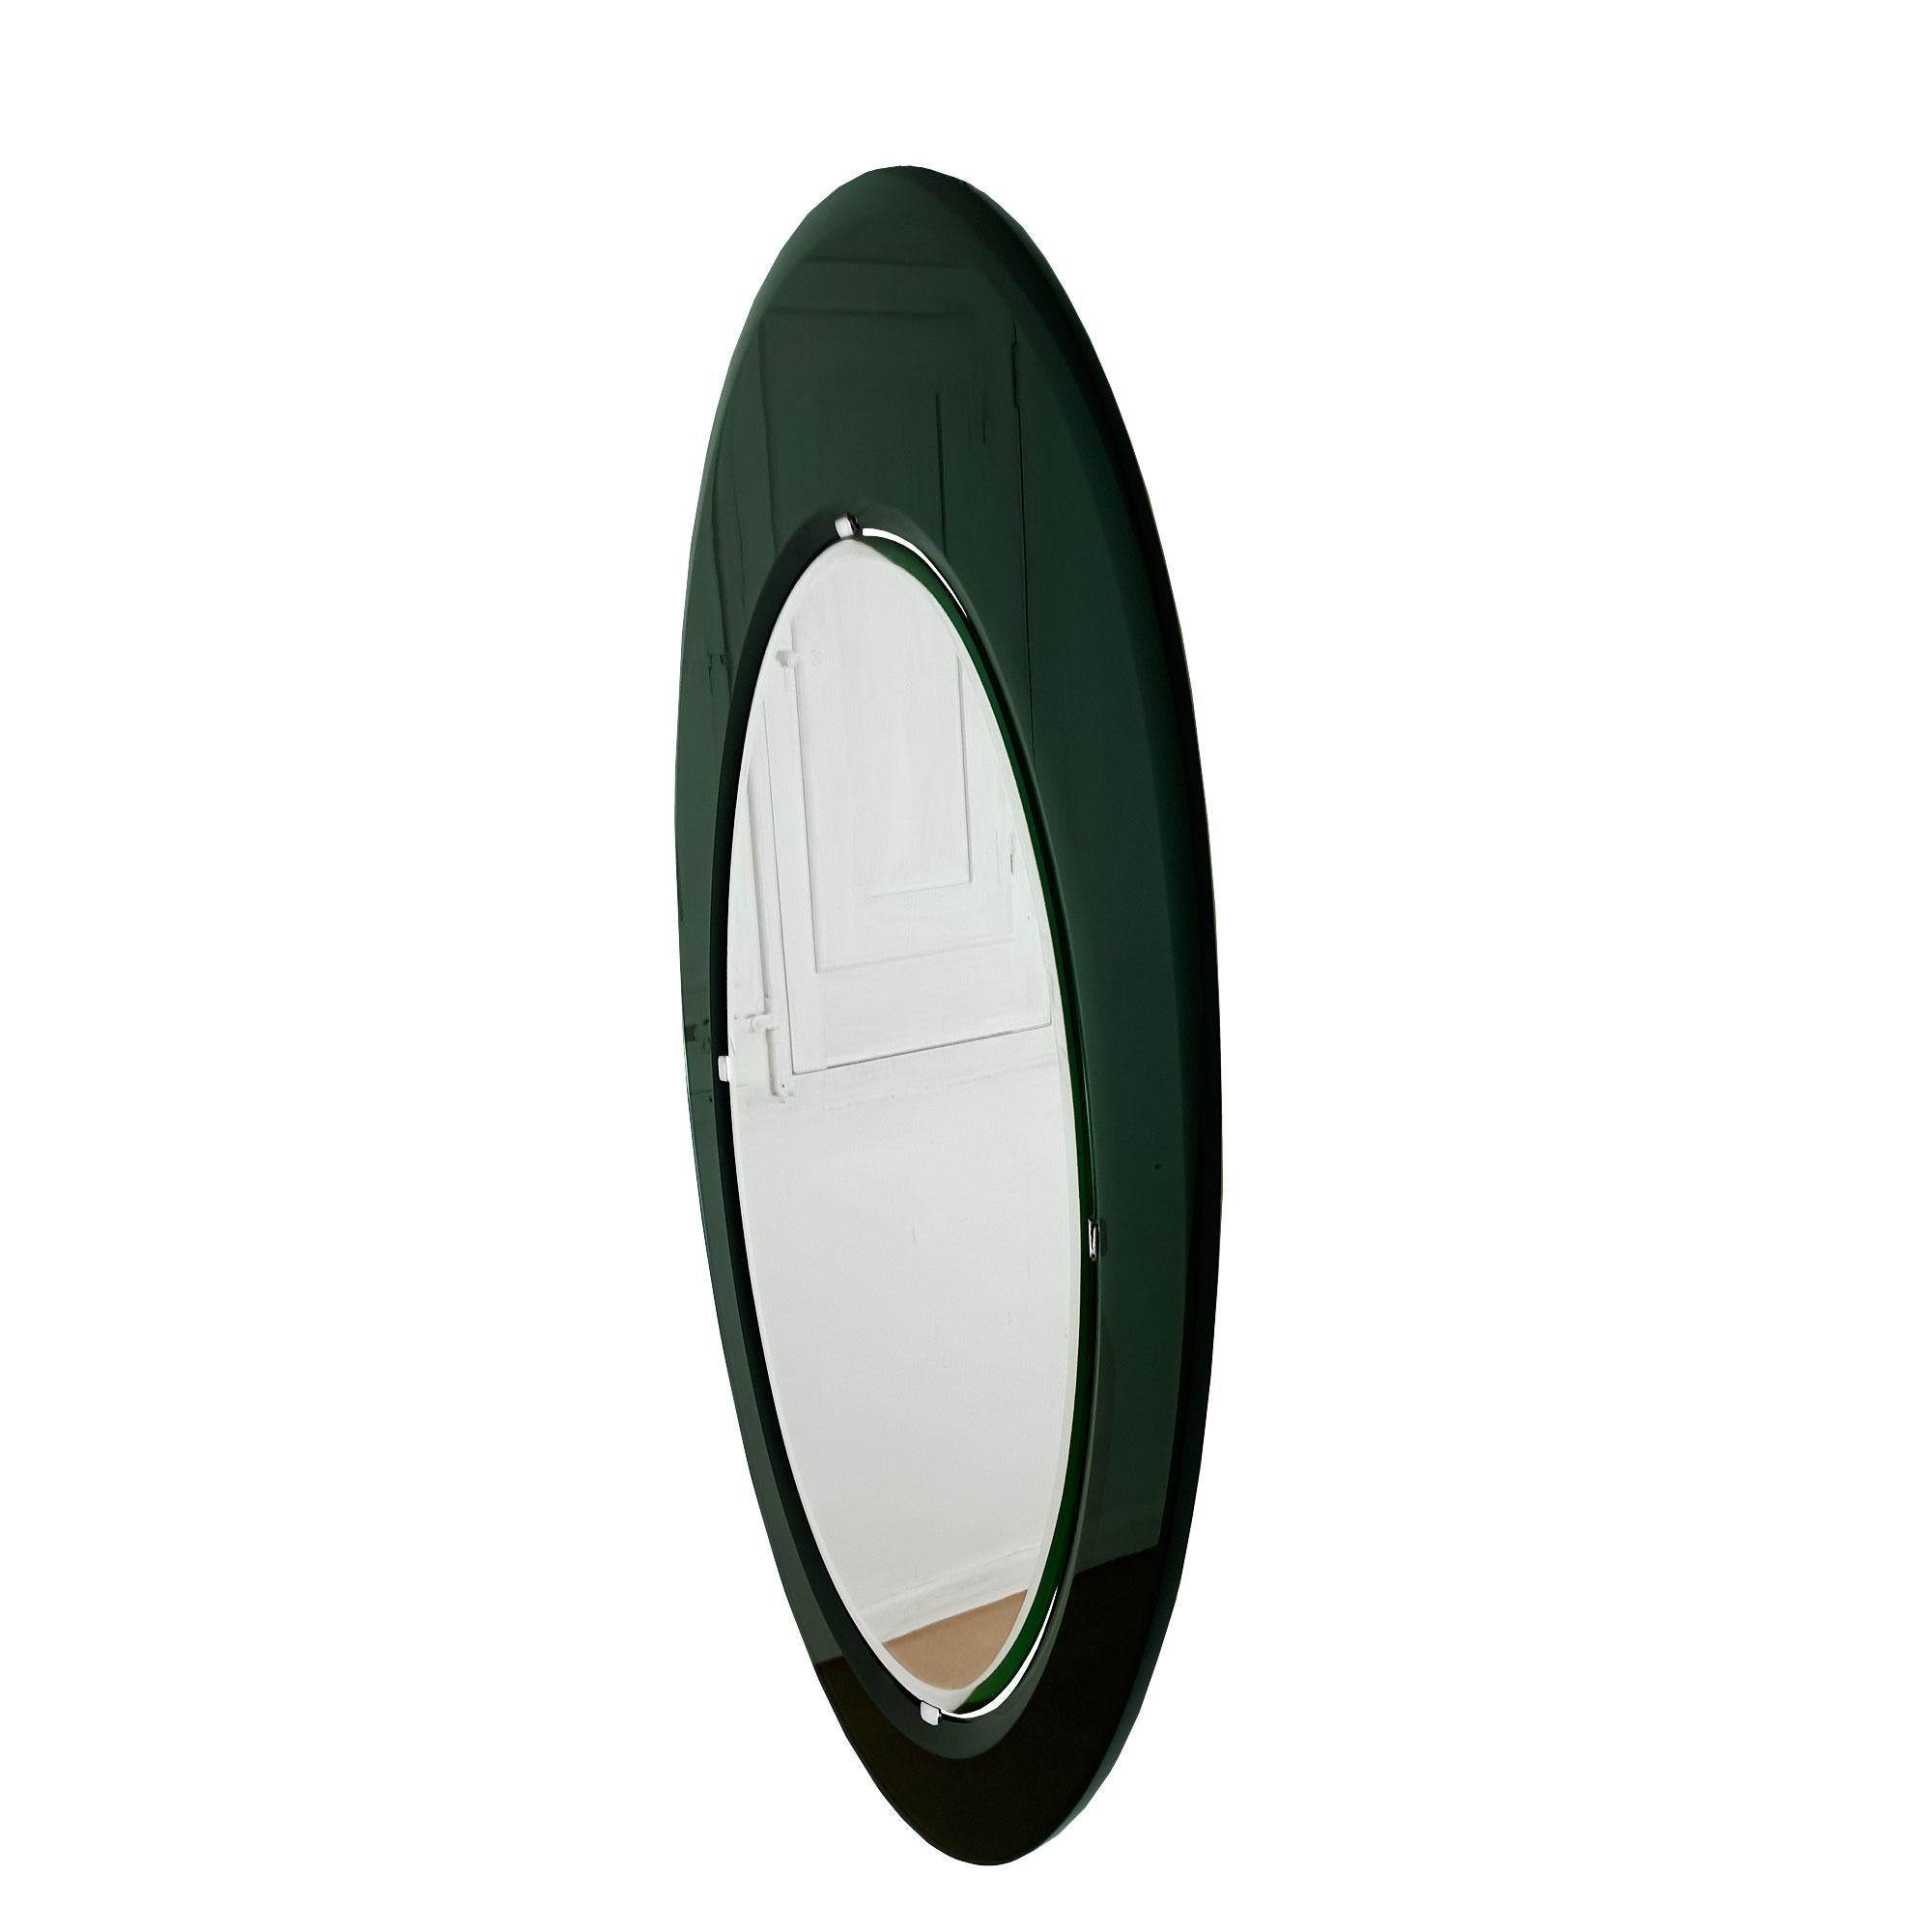 Spektakulärer großer ovaler Spiegel. Abgeschrägter Spiegel, montiert in einem asymmetrischen dunkelgrünen, innen und außen abgeschrägten Spiegelrahmen (ausgeklügeltes, abnehmbares Befestigungssystem). Sehr hohe handwerkliche Qualität.
Fontana Arte